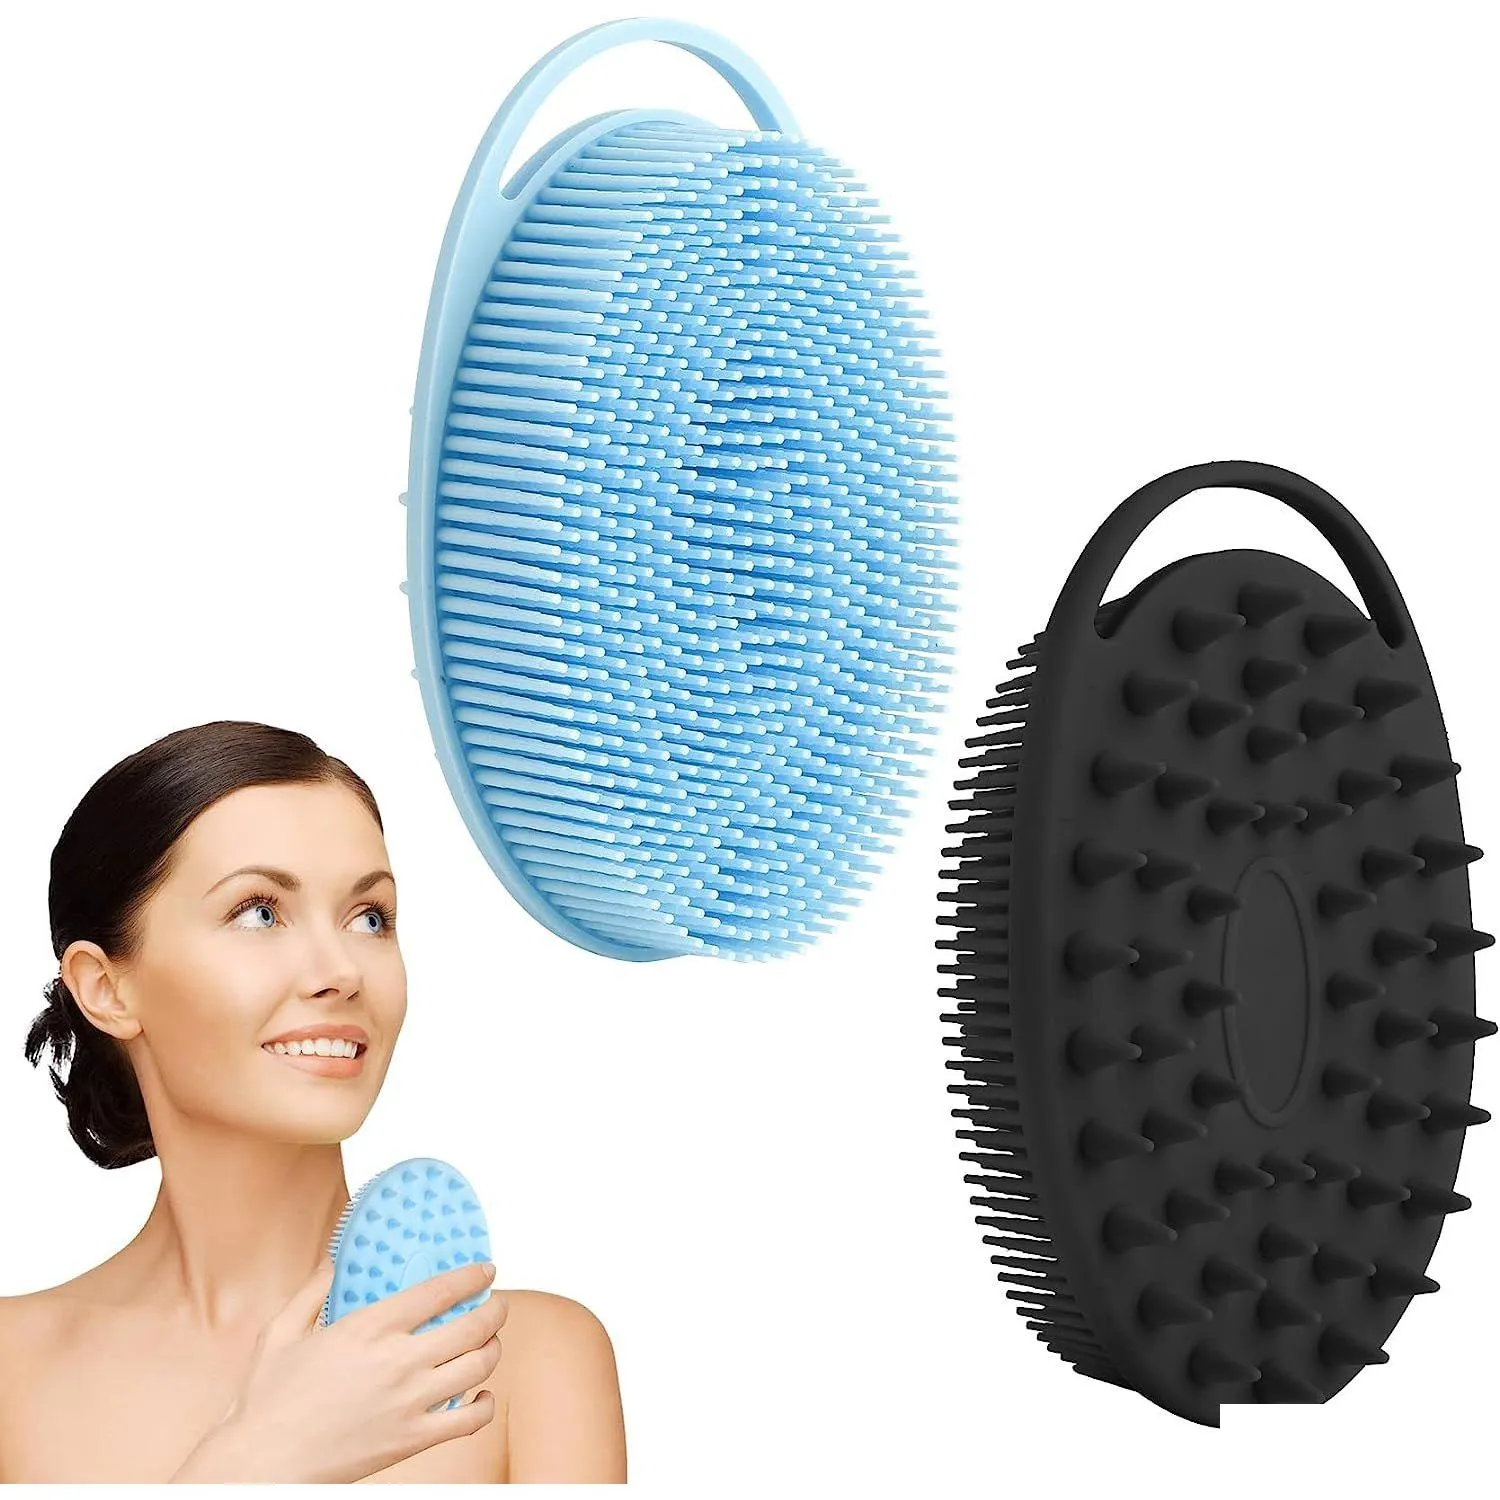 Ferramentas de banho Acessórios Esfoliante Sile Body Scrubber Soft Loofah Shower 2 em 1 Esfoliante Masr Shampoo Escova para toda a pele Homens Mulheres K Dhicn